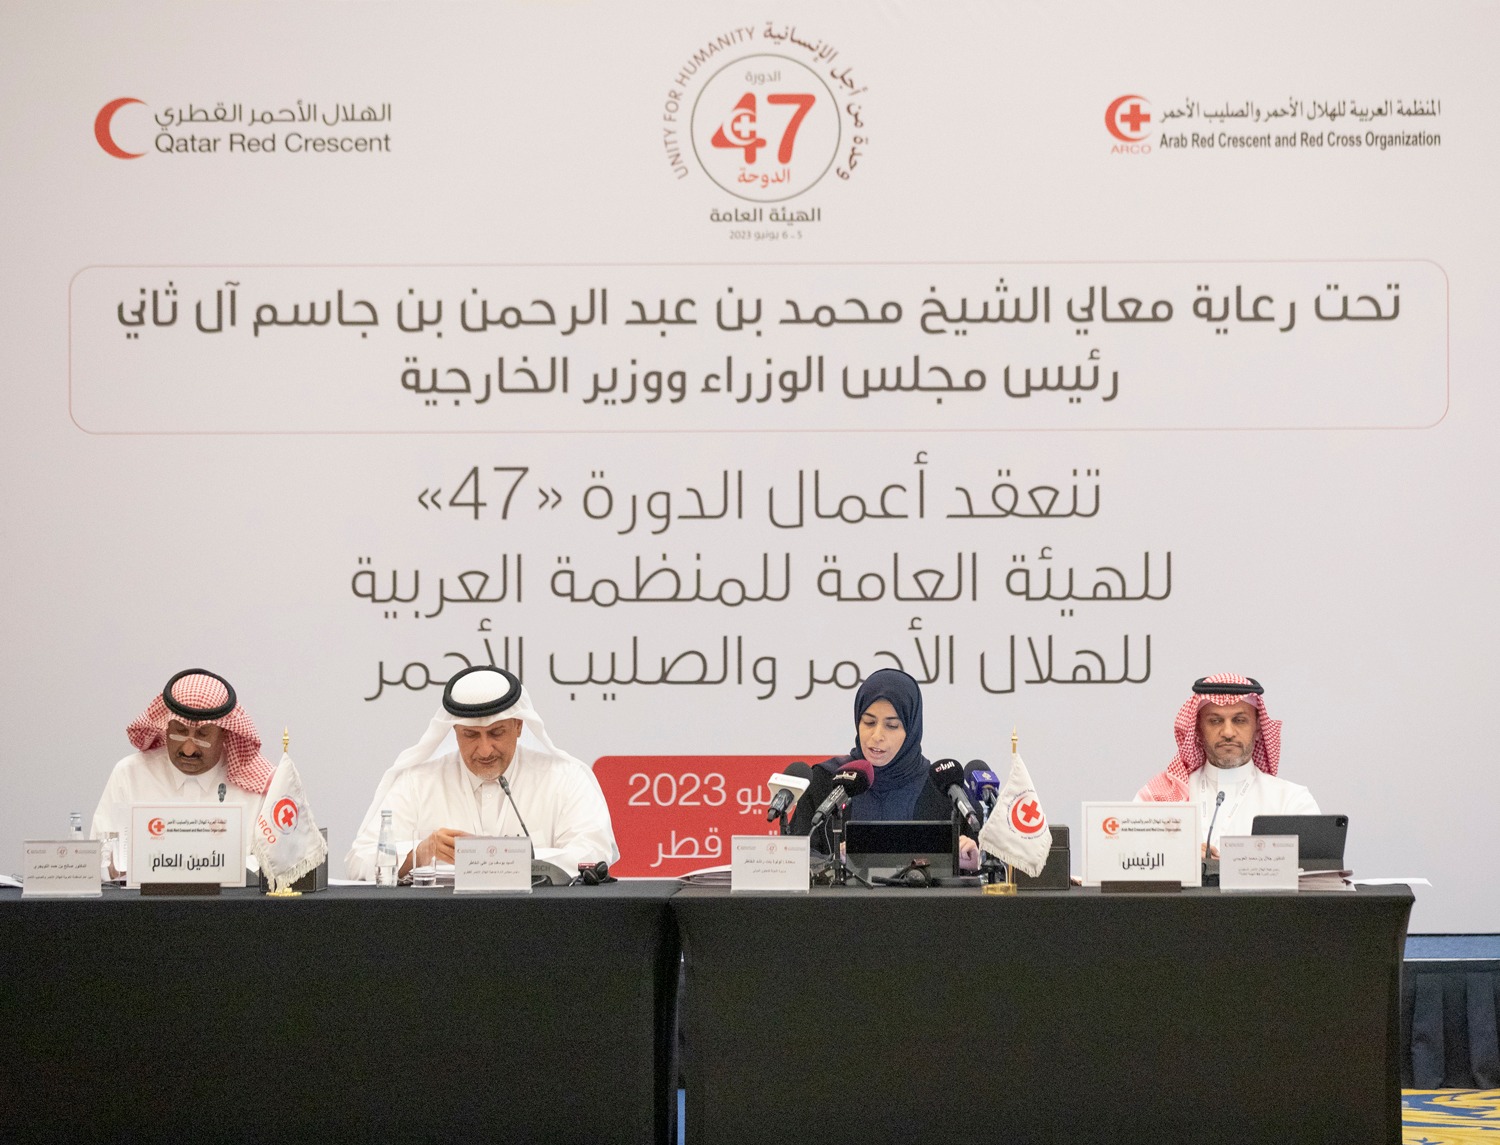 وزير الدولة للتعاون الدولي تؤكد حرص قطر على المساهمة في معالجة الأزمات الإنسانية إقليميا ودوليا